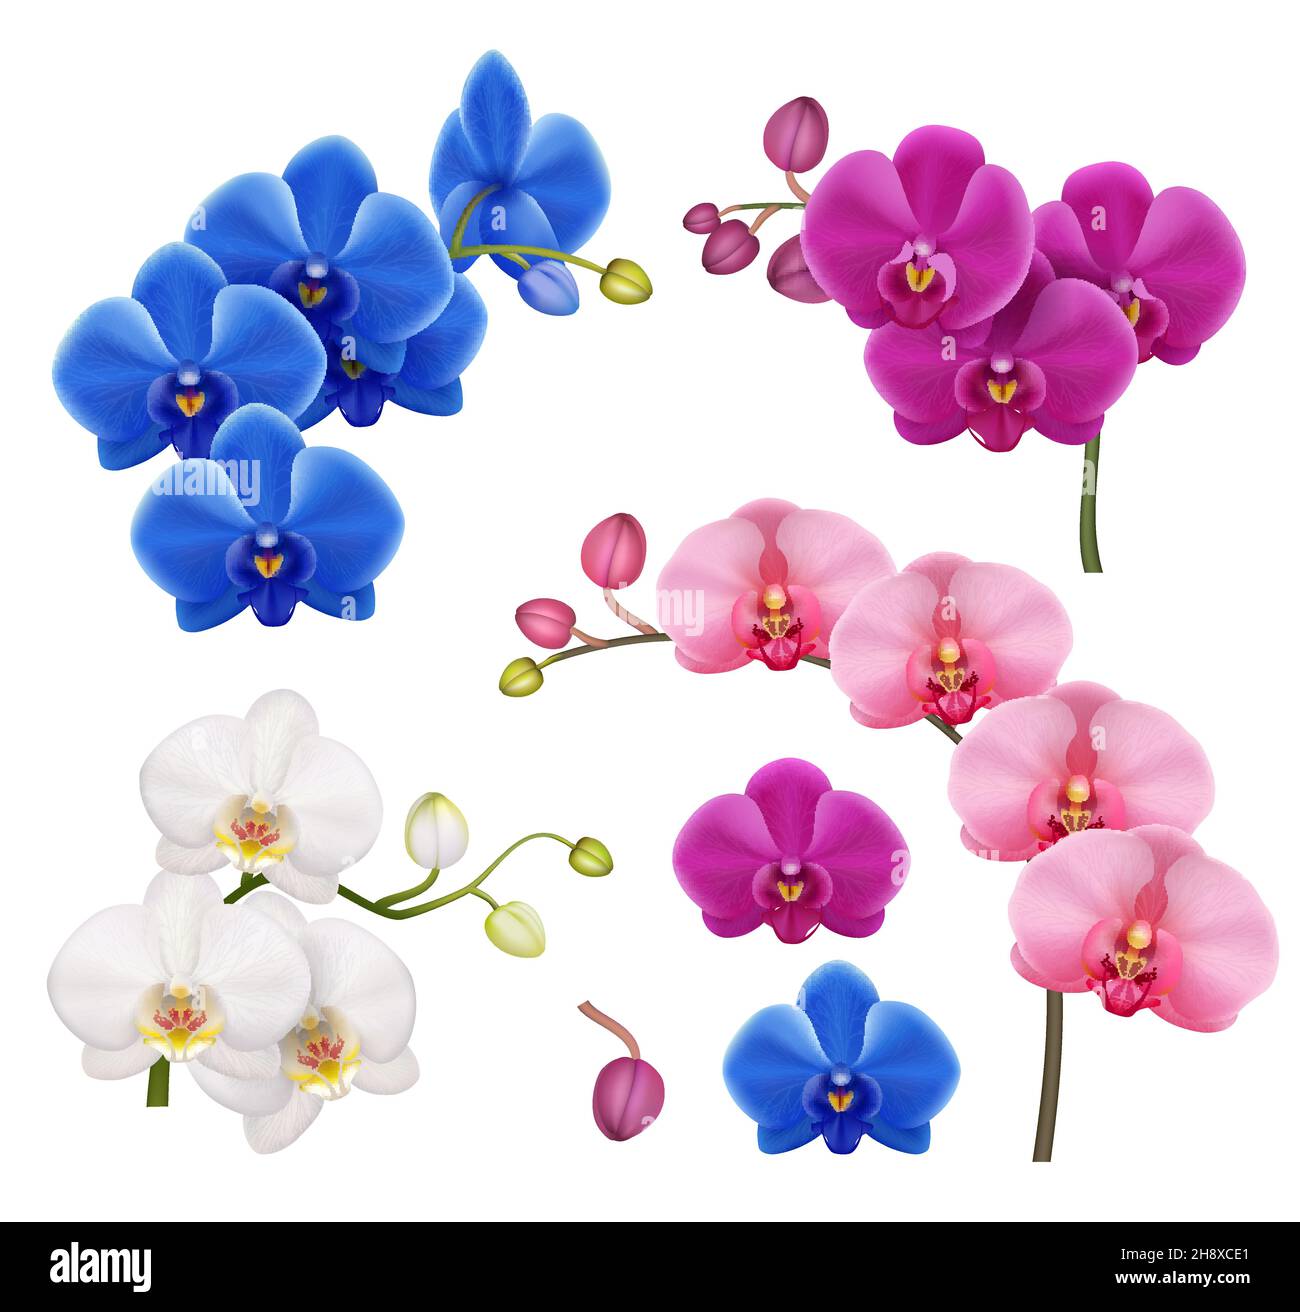 Orchideen realistisch. Exotische Blumen botanische Illustration tropische Blumen Vektor Sammlung anständige farbige Bilder isoliert Stock Vektor